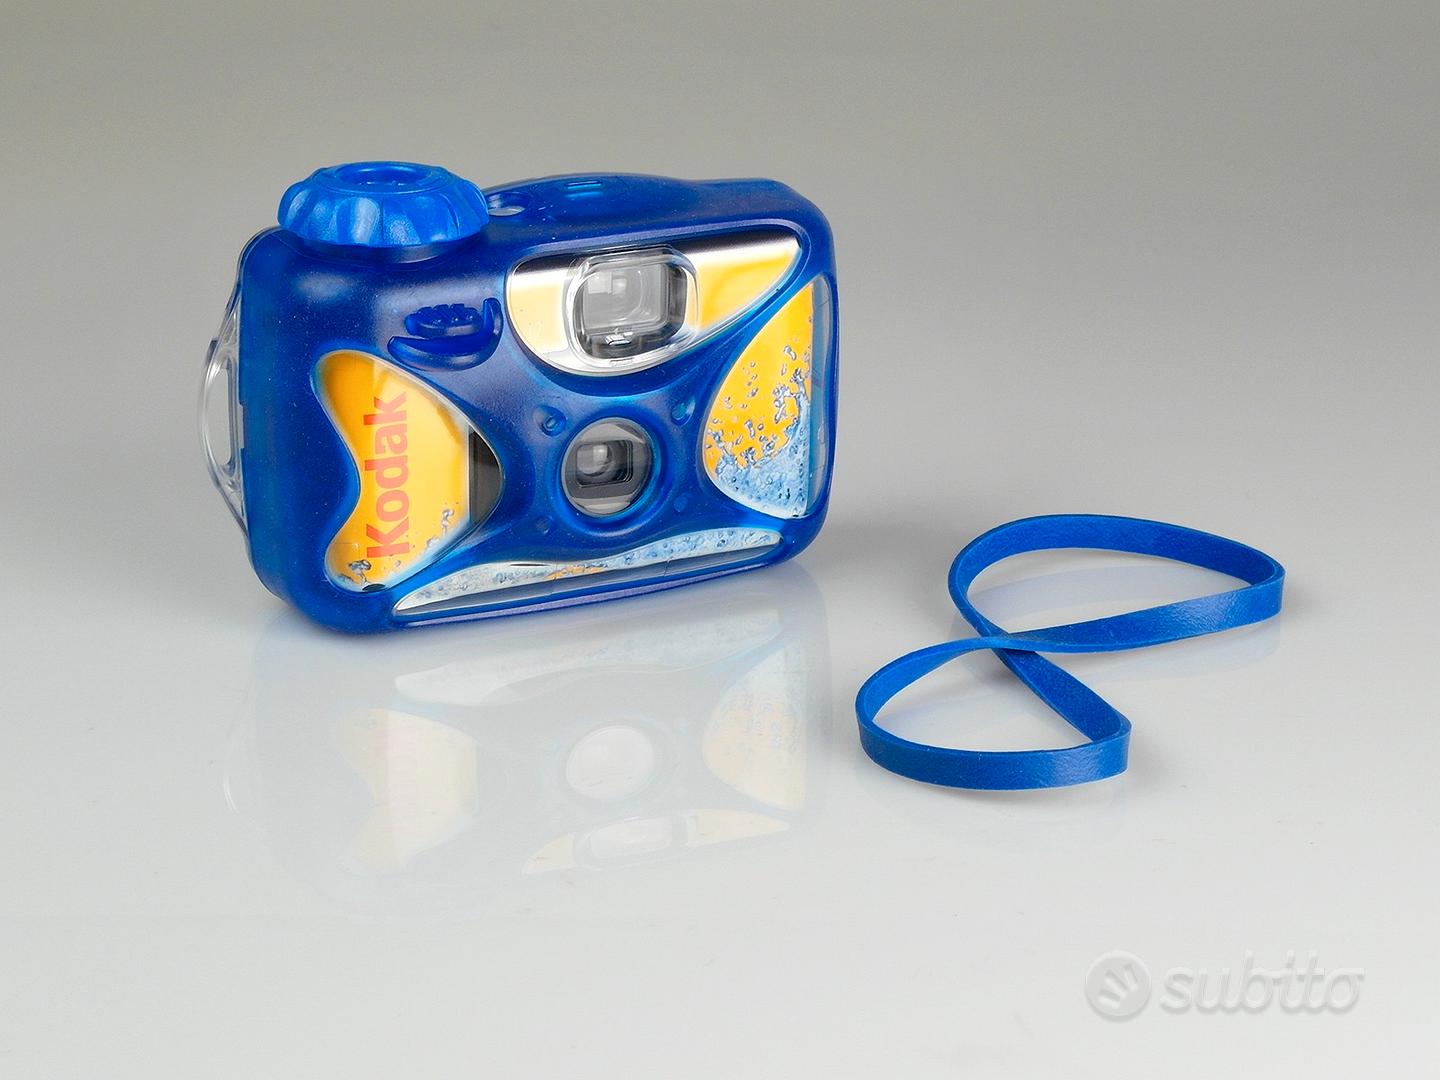 Fotocamera usa e getta waterproof della Kodak - Fotografia In vendita a  Milano